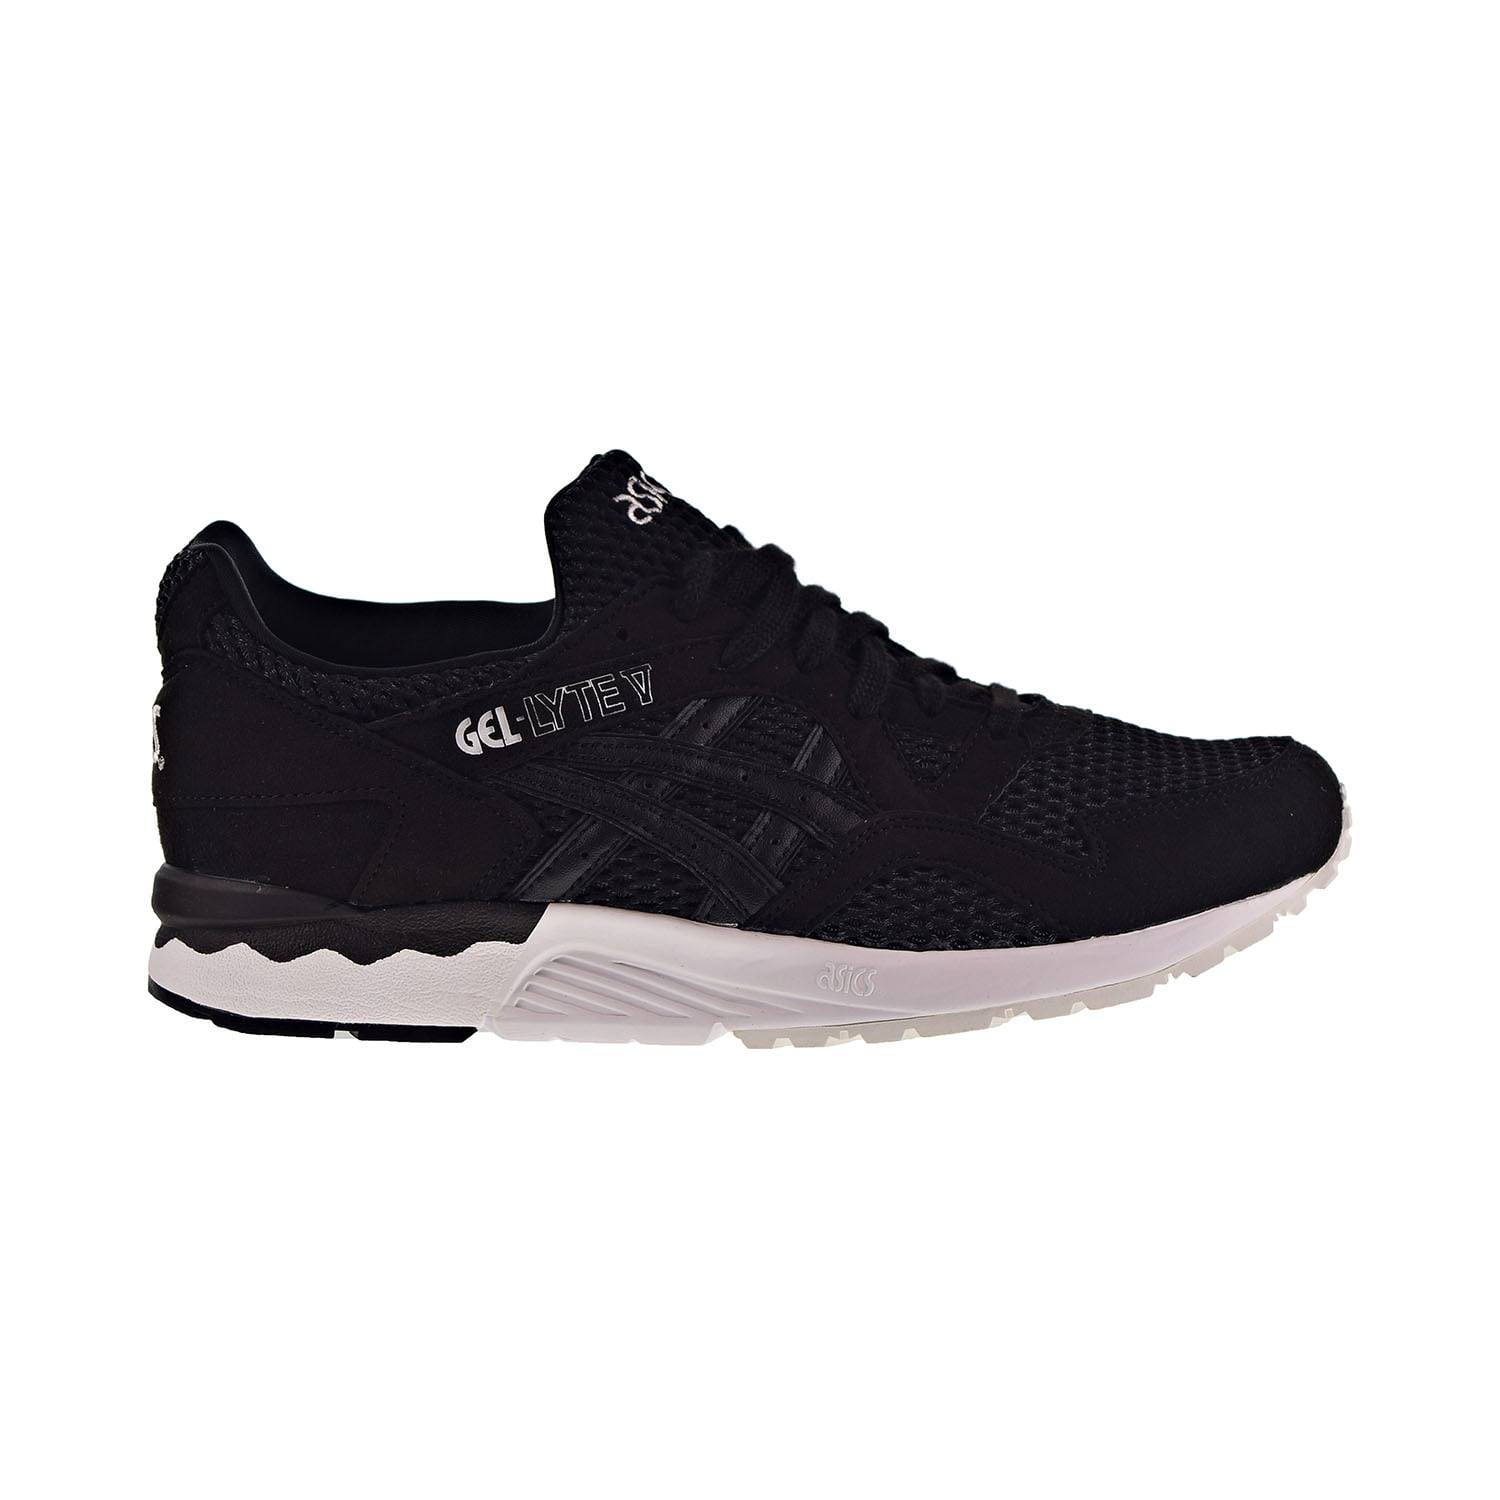 Asics Gel-Lyte V Men's Shoes Black-White - Walmart.com